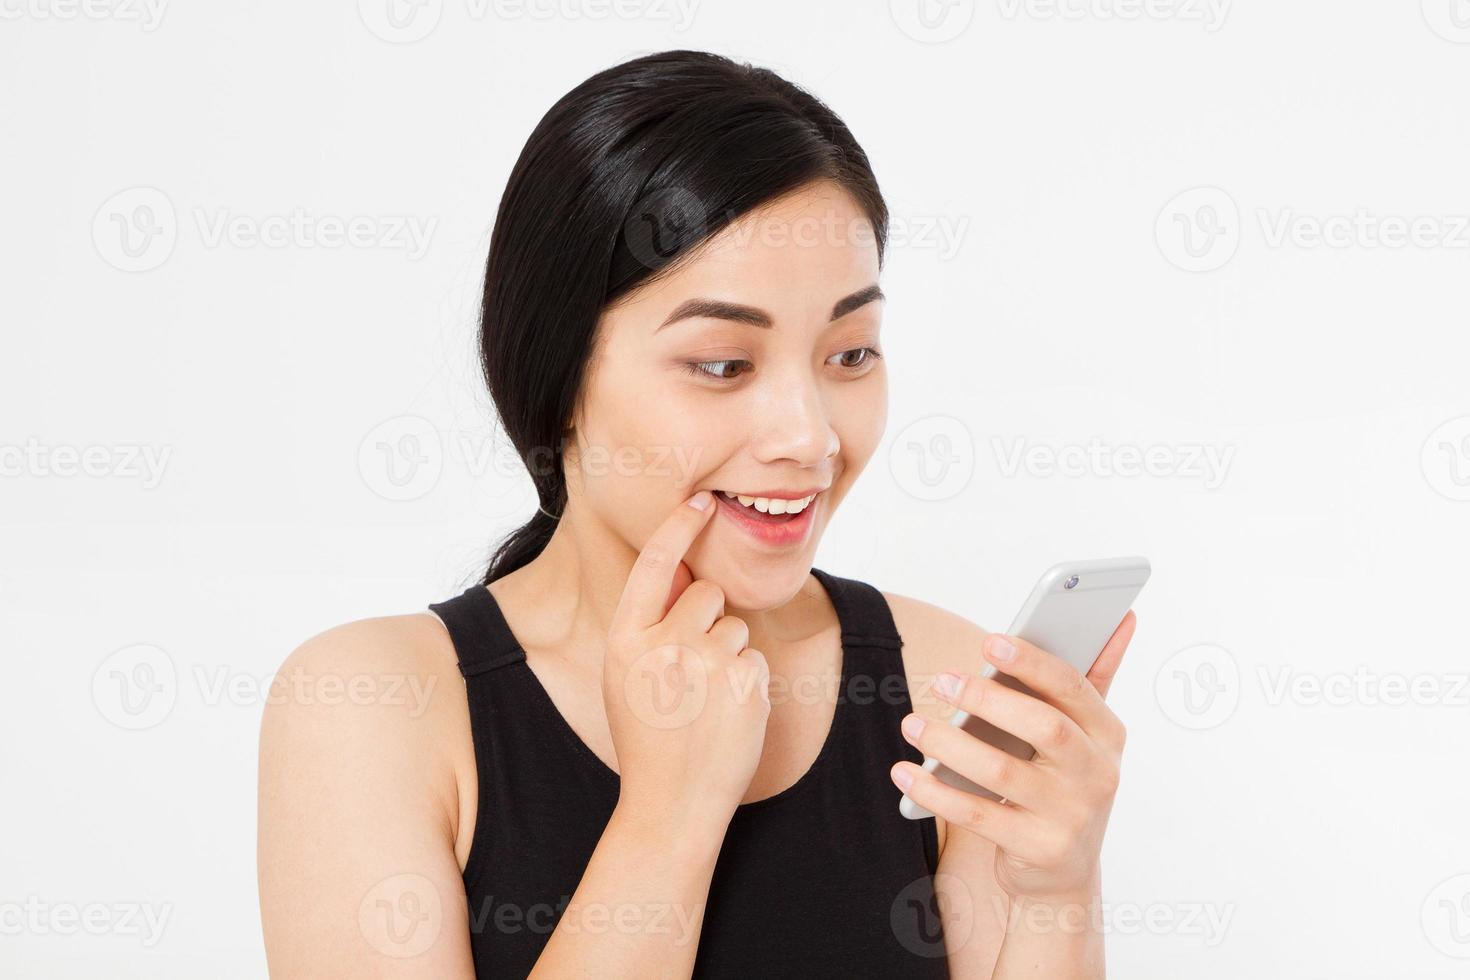 cellulare sorridente della stretta della donna. primo piano giovane bella donna giapponese asiatica felice. ragazza guardando cellulare mobile isolato su sfondo bianco. espressione positiva del viso emozione umana. copia spazio. foto